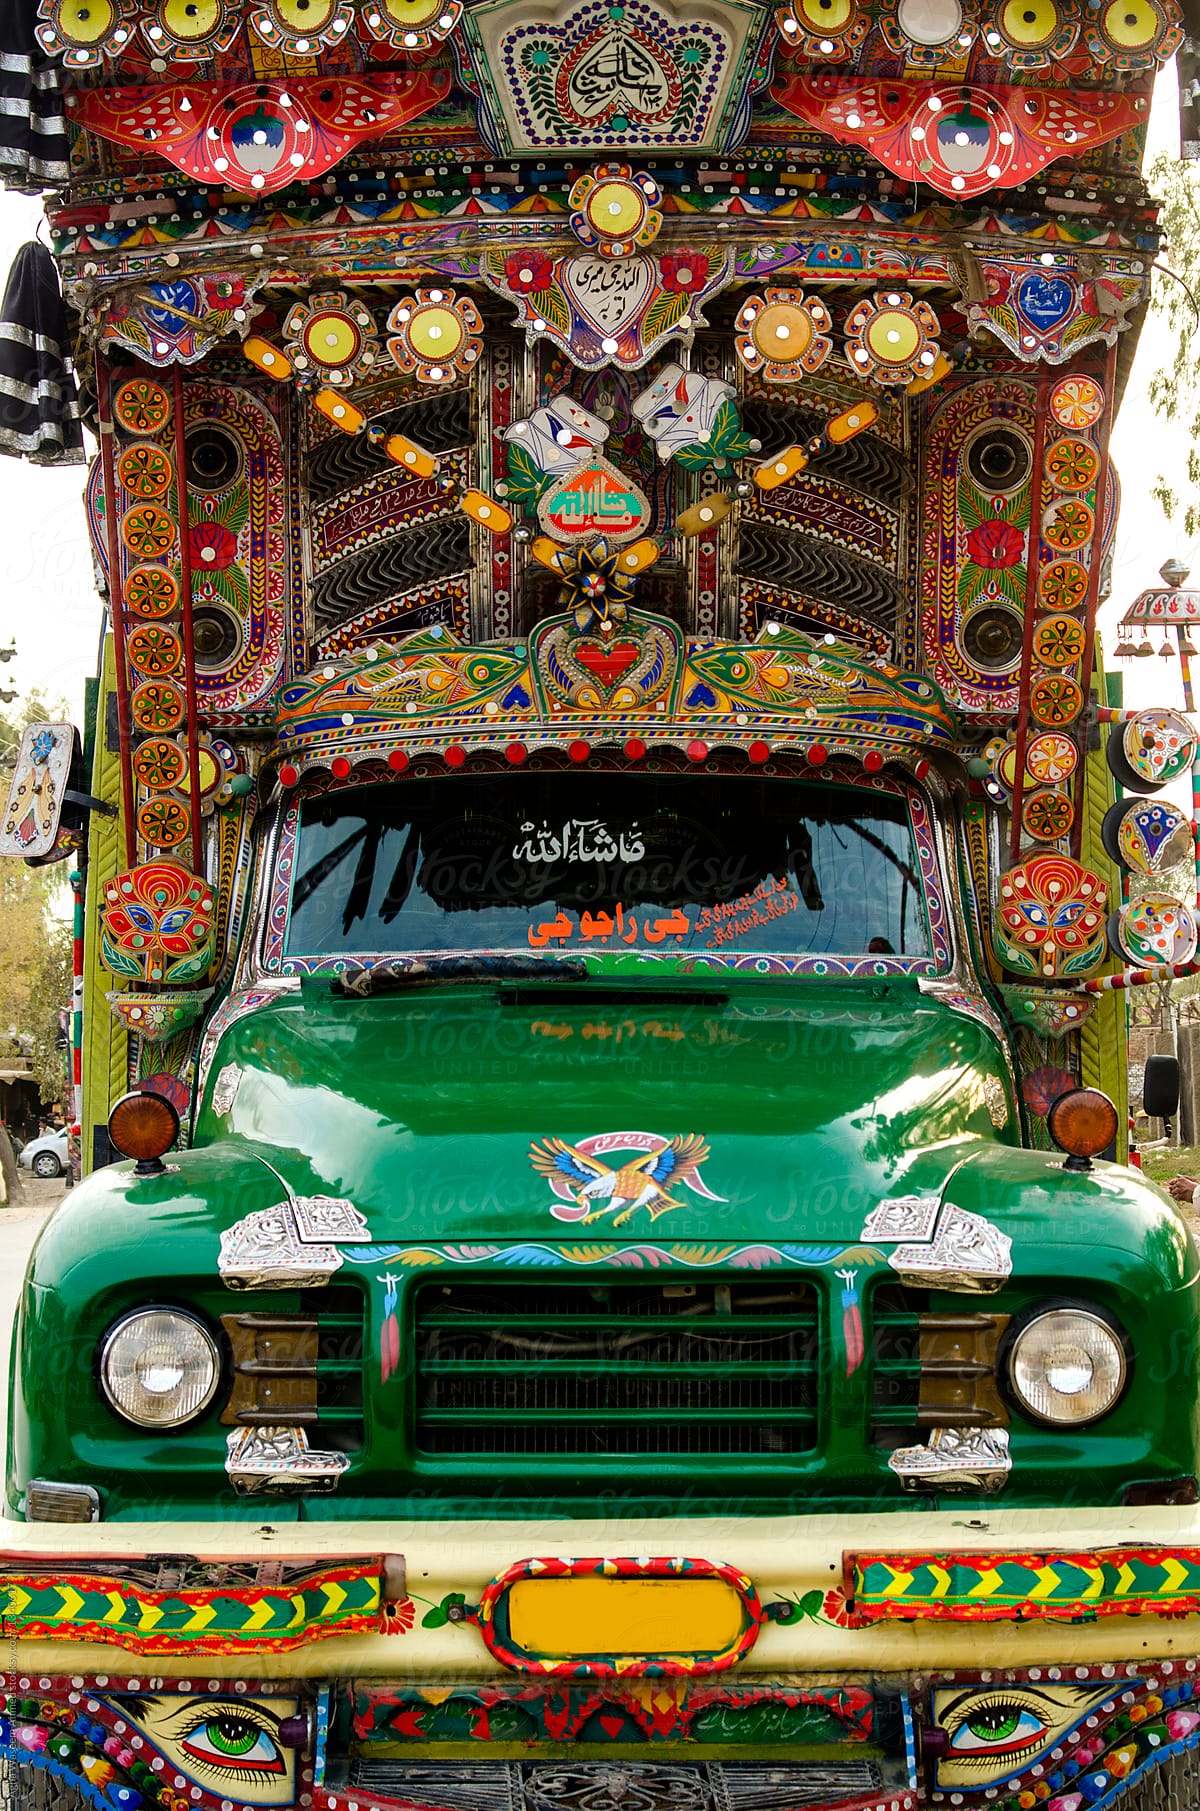 A Pakistani Truck